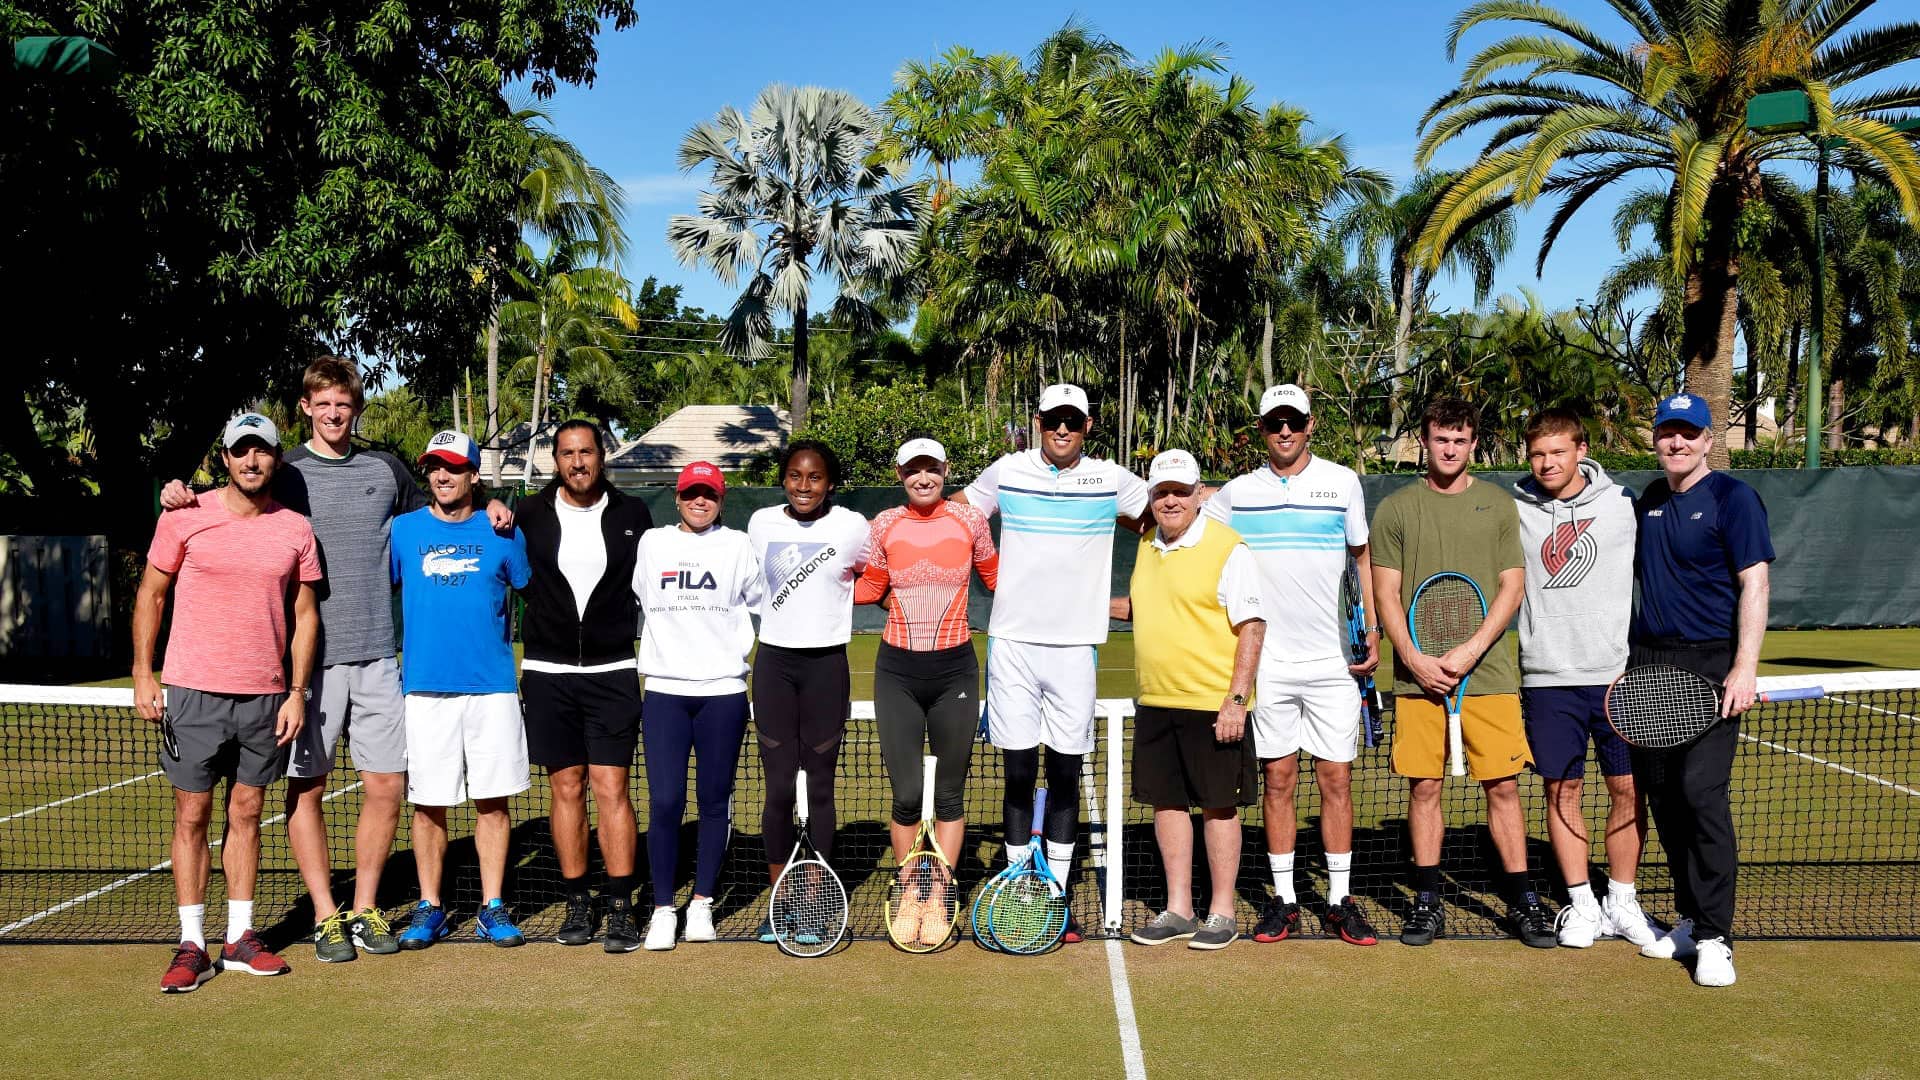 Теннисисты и легенды гольфа собрали более 1 миллиона долларов на благотворительность